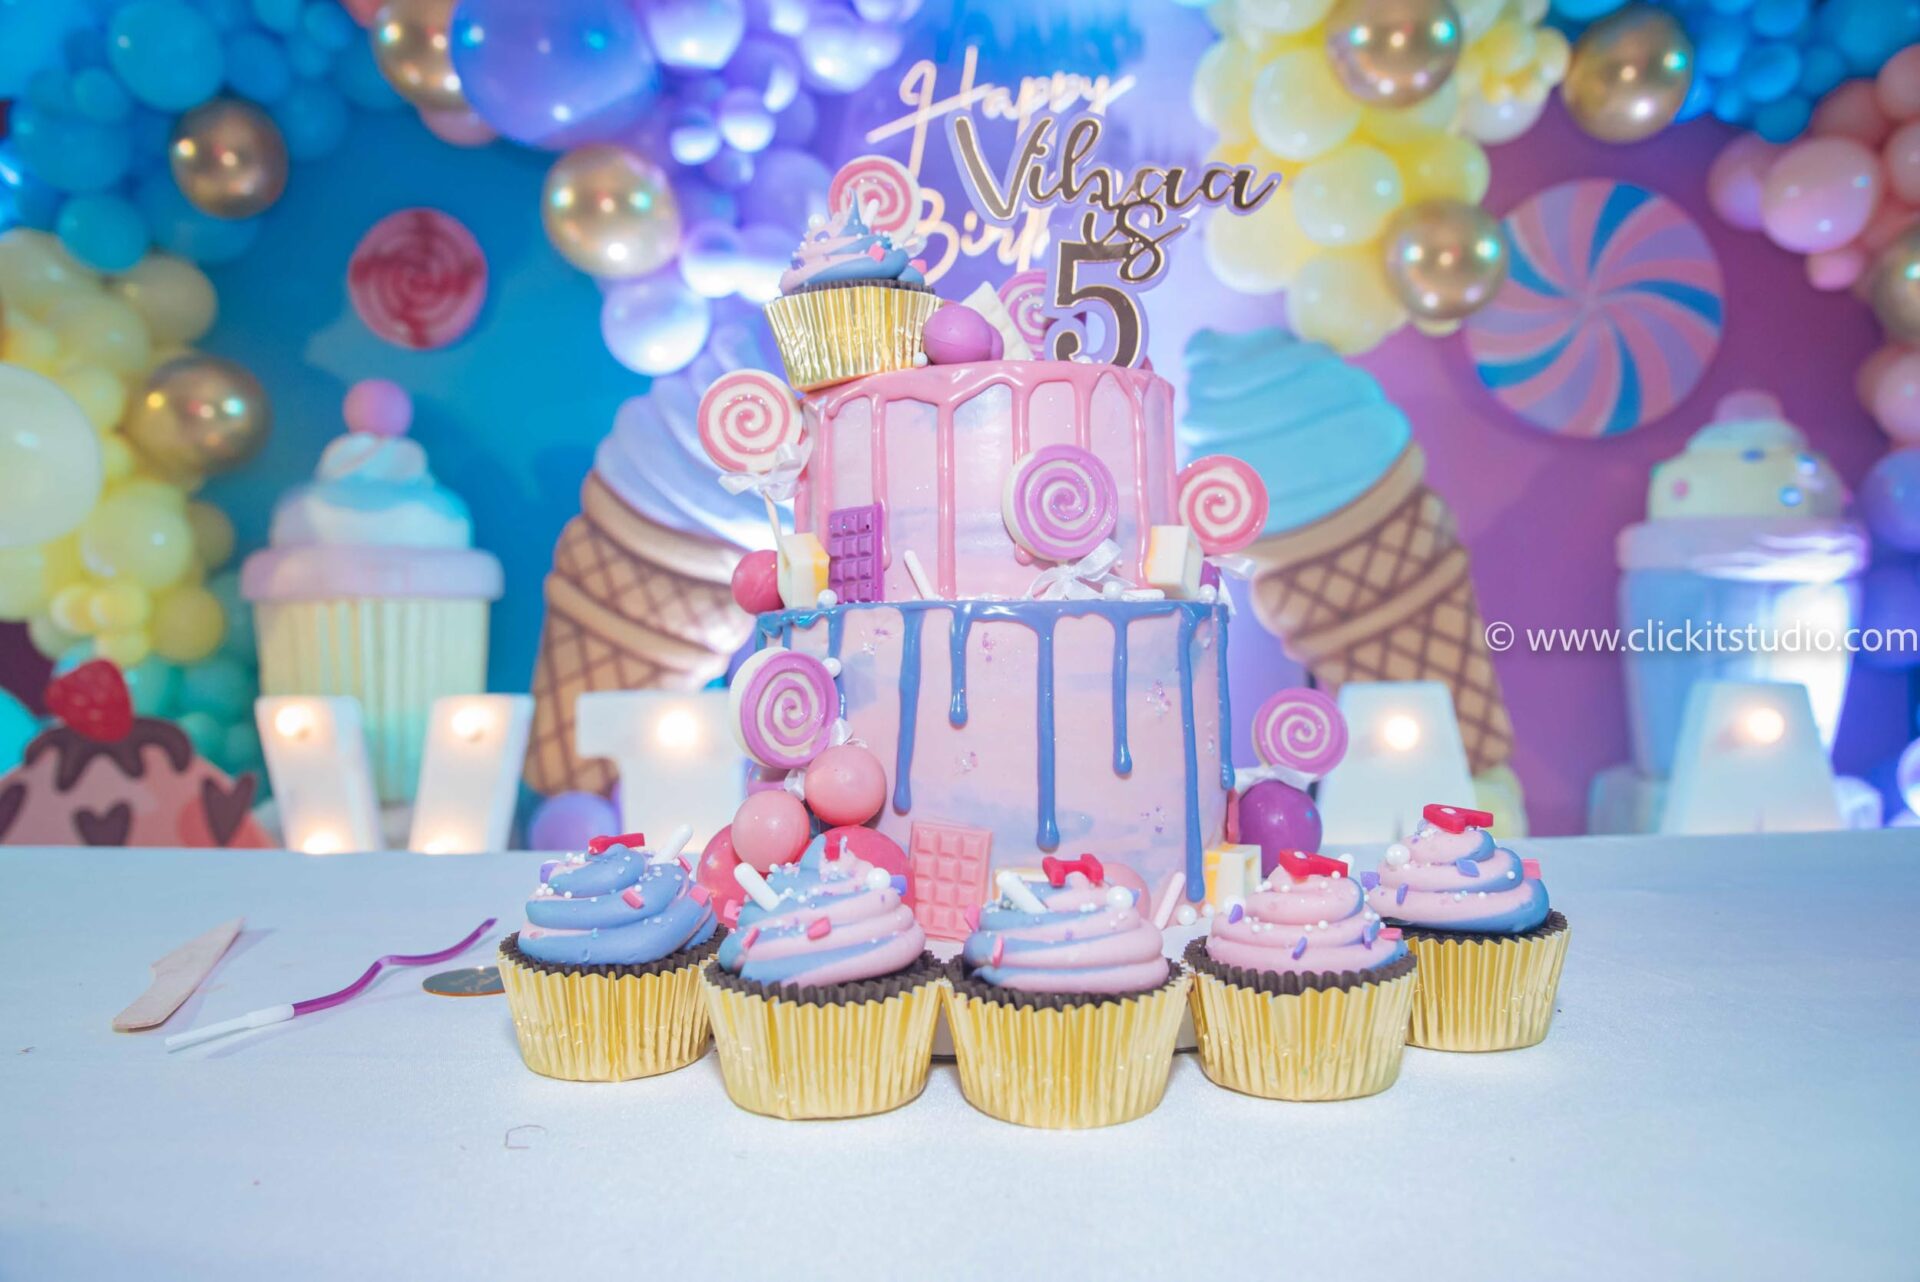 Joyful One-Year-Old Birthday Celebration – Mumbai Photography